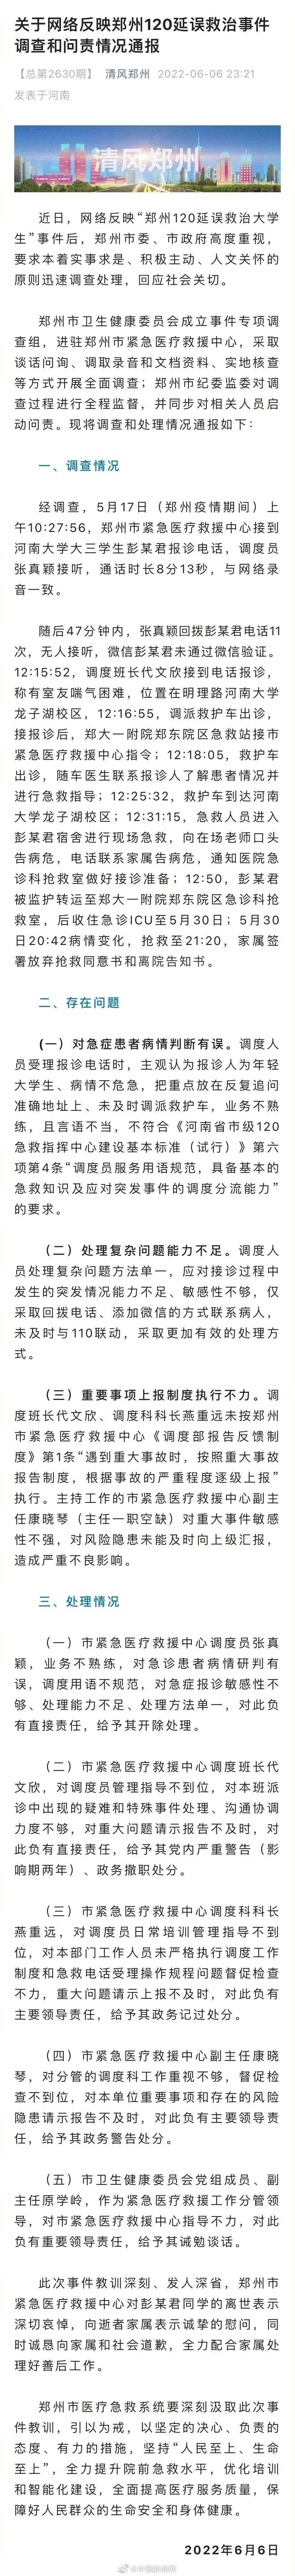 郑州女生打120未果去世 120接线员张真颖开除 5人被处理图片